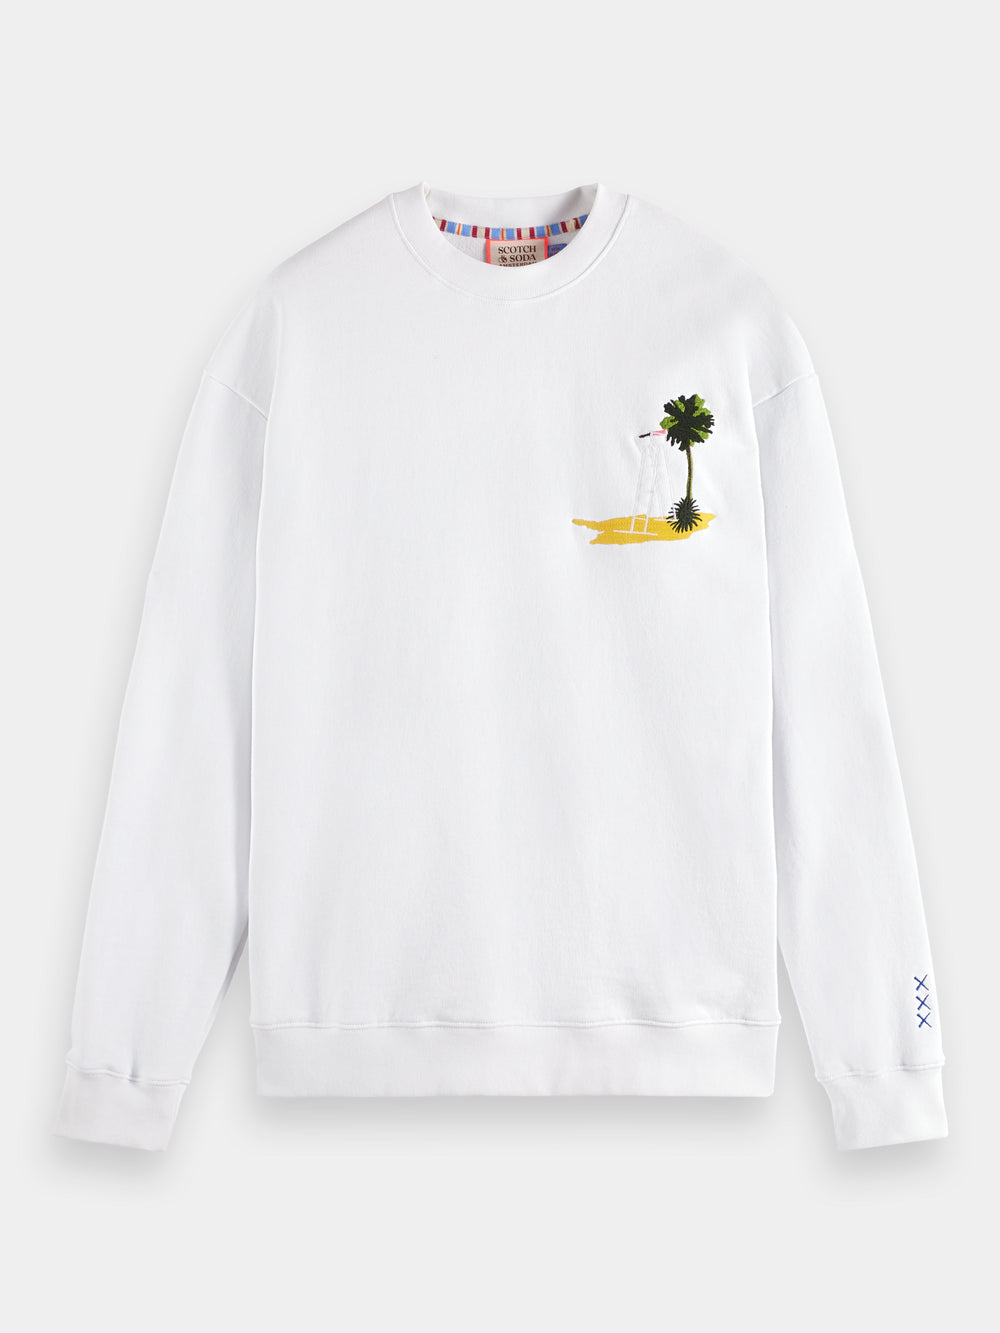 Garment-dyed artwork sweatshirt - Scotch & Soda AU